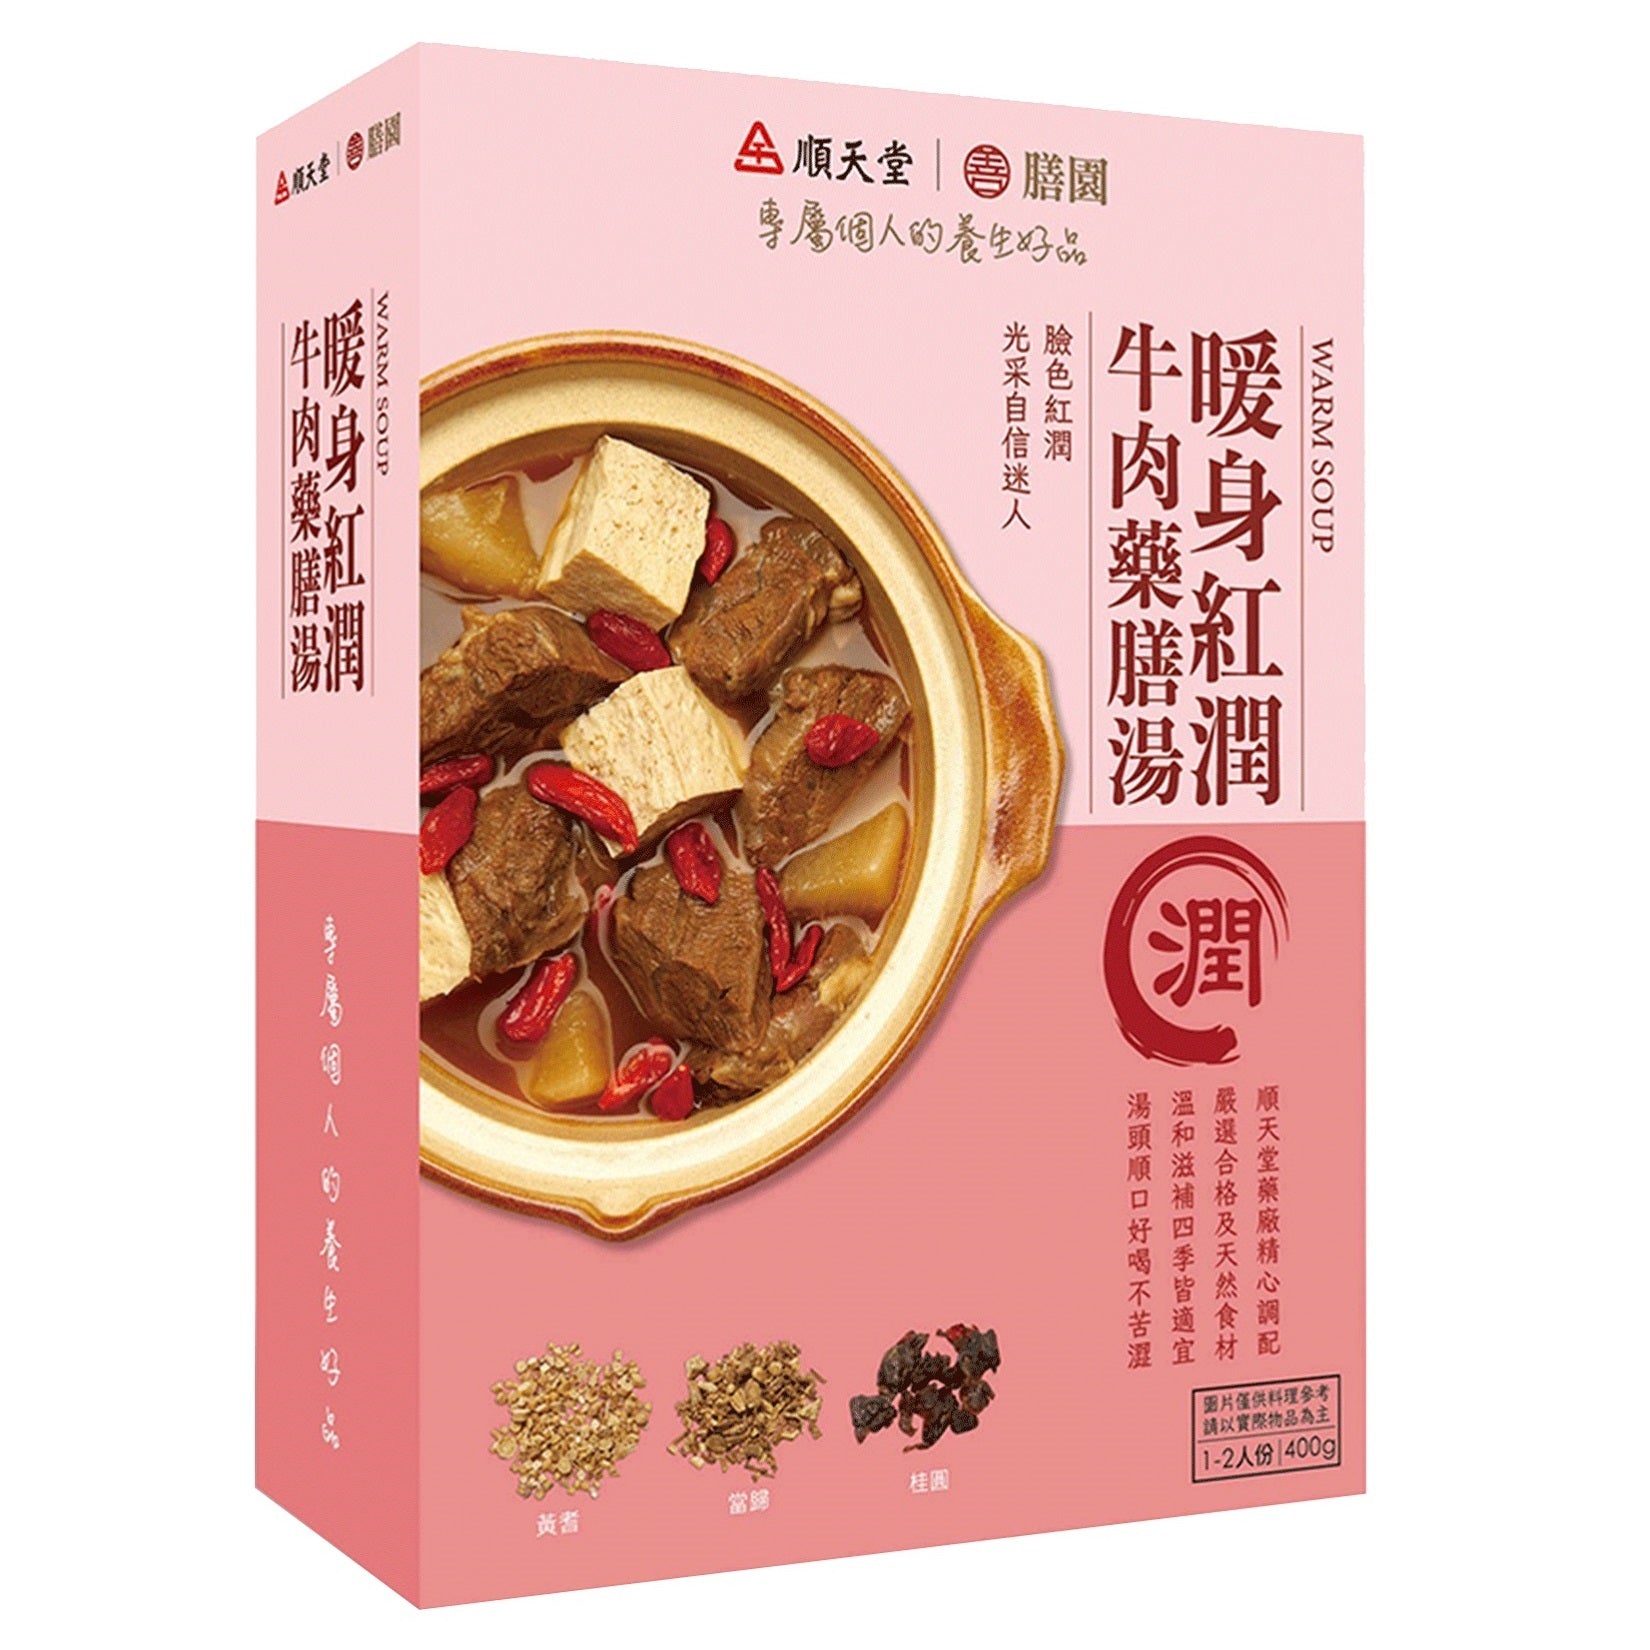 【順天堂/善膳園】暖身紅潤牛肉藥膳湯 (400g/盒)